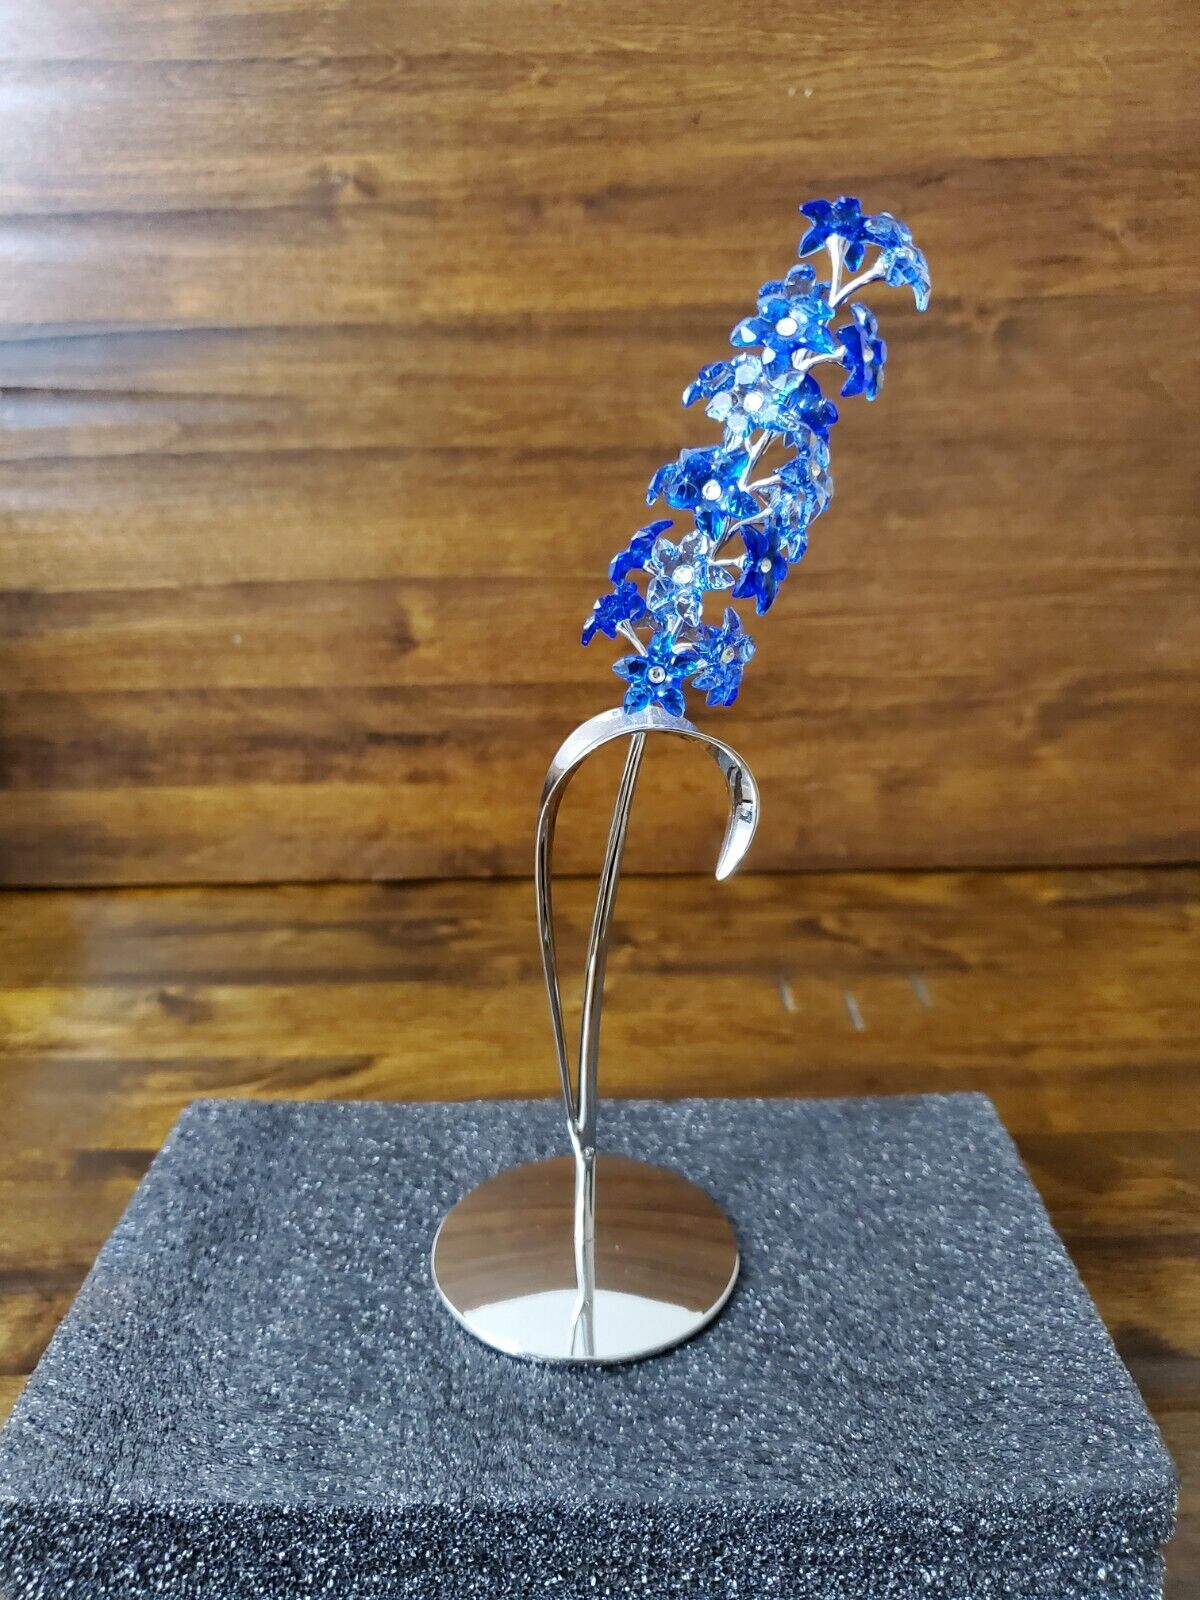 Swarovski Crystal Paradise Dindori Sapphire Blue Flowers Figurine No Box